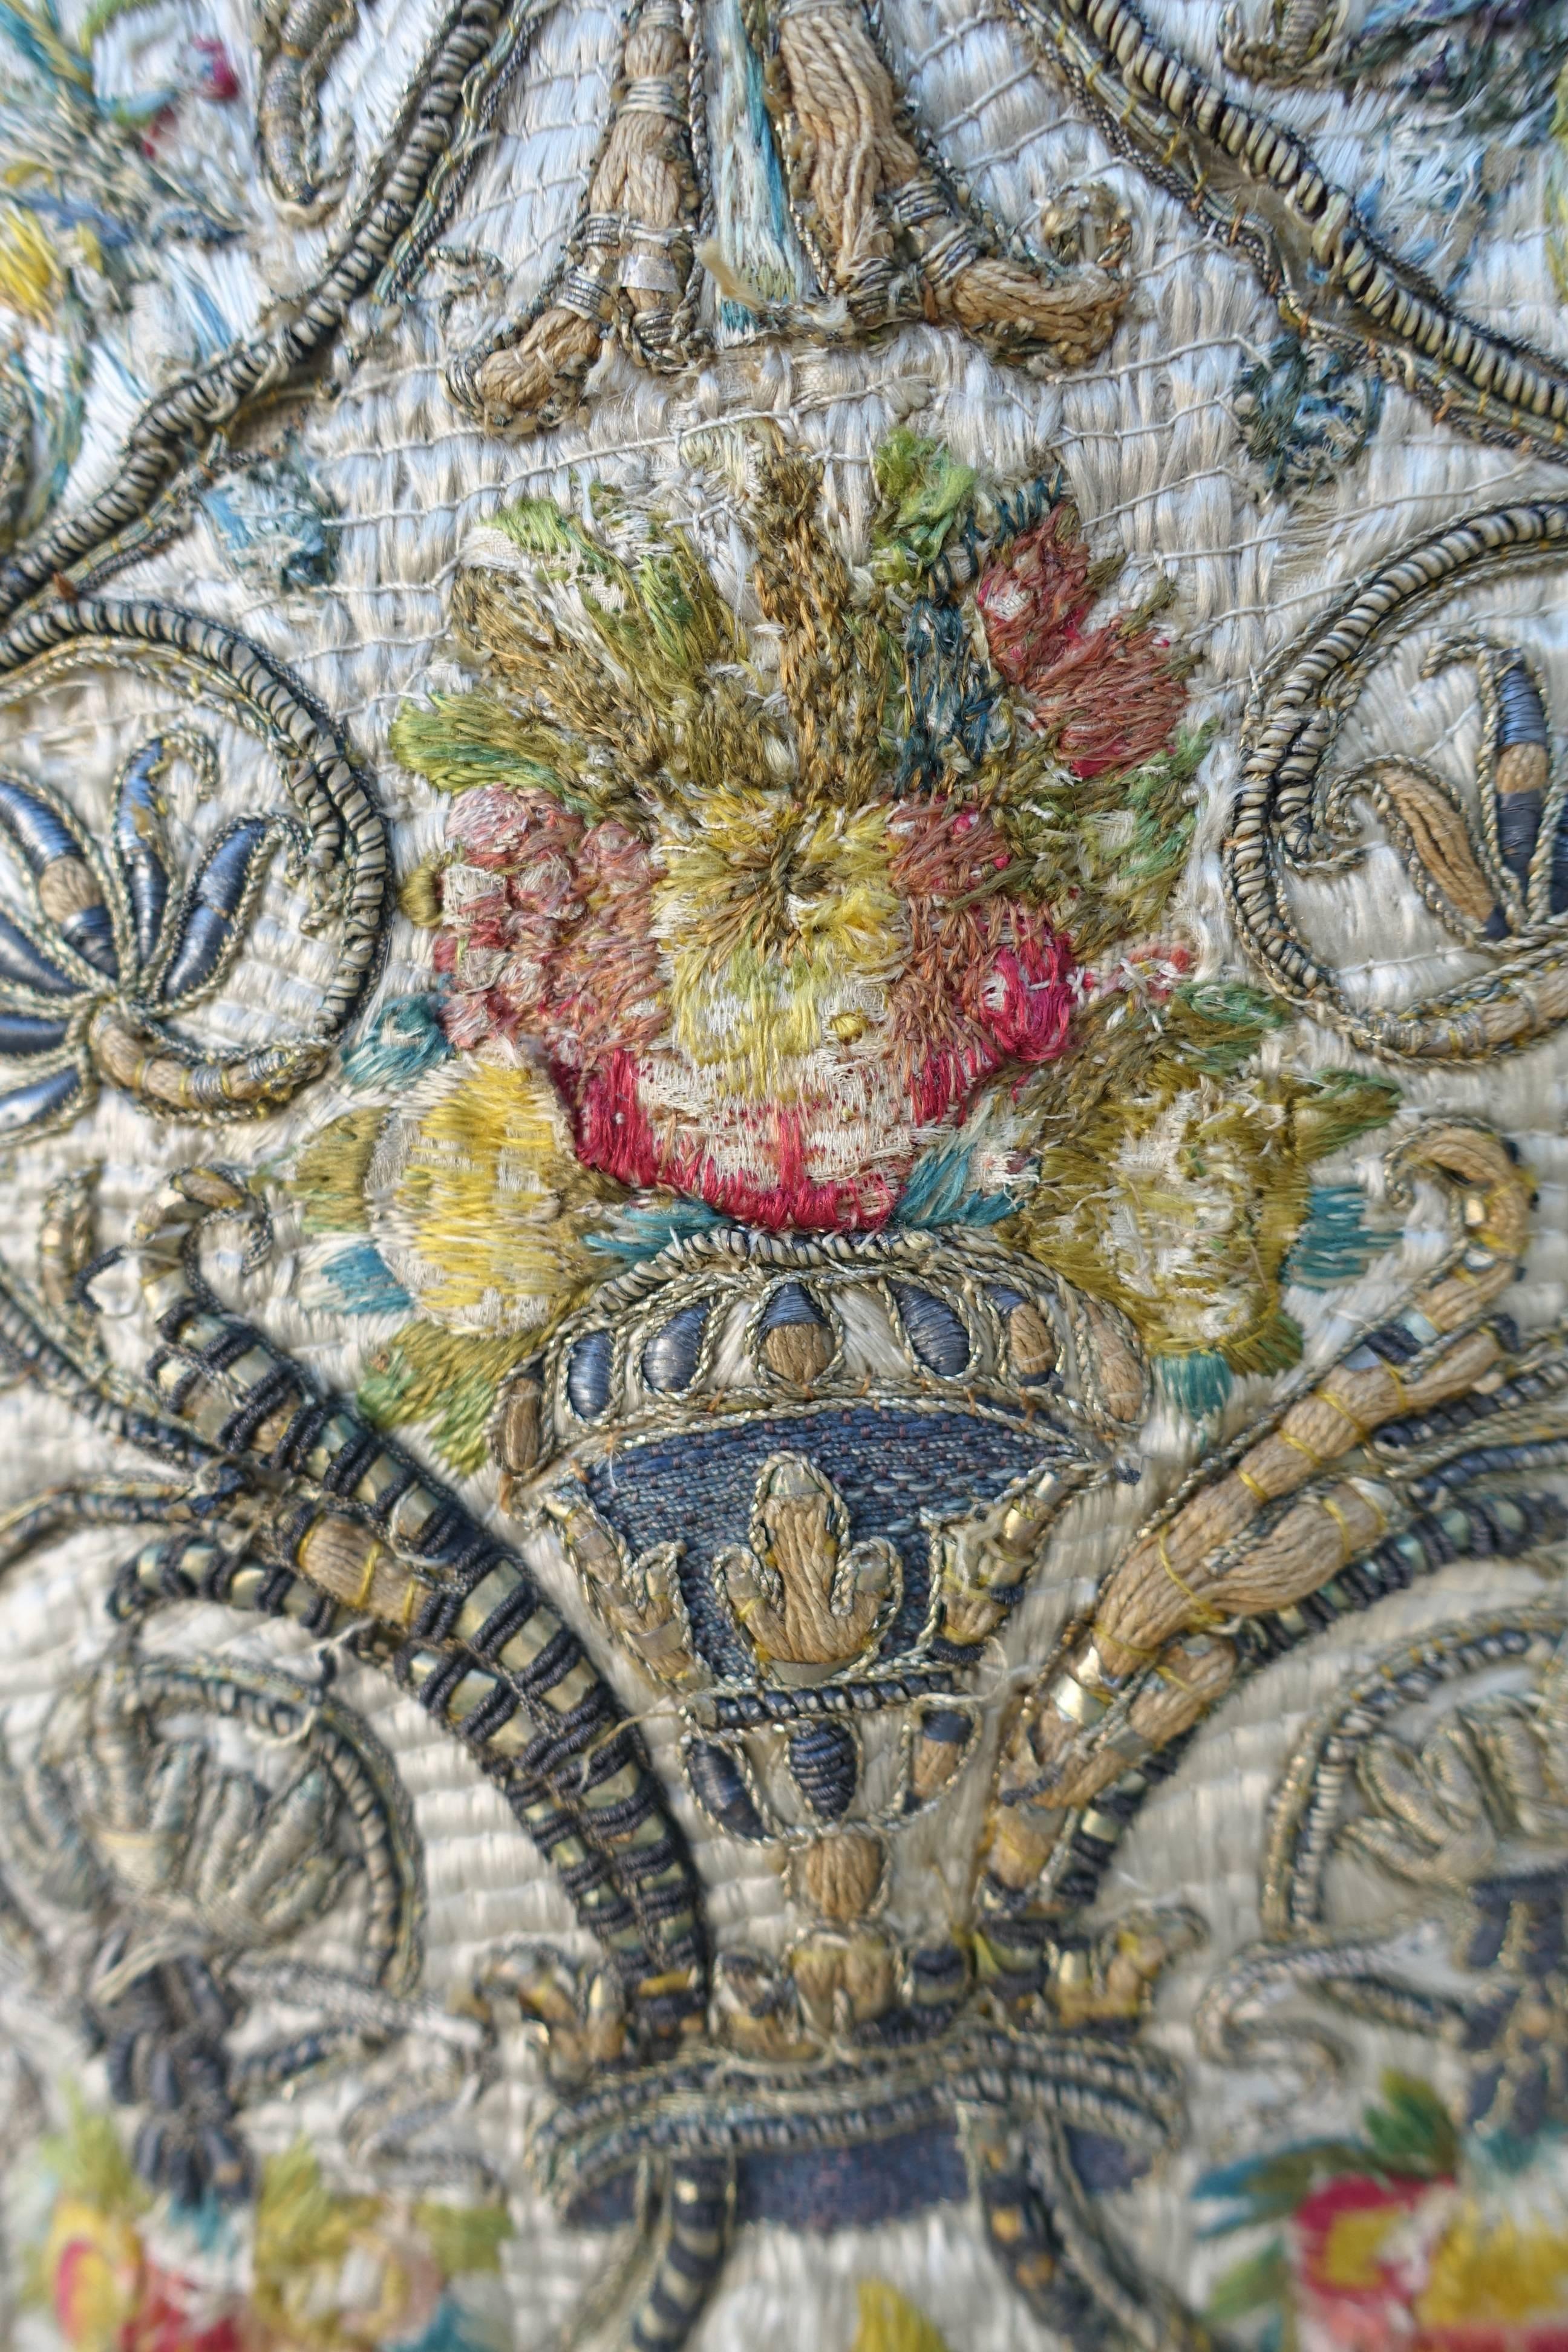 Metallic Thread 18th Century Italian Embroidered Vestment on Iron Stand